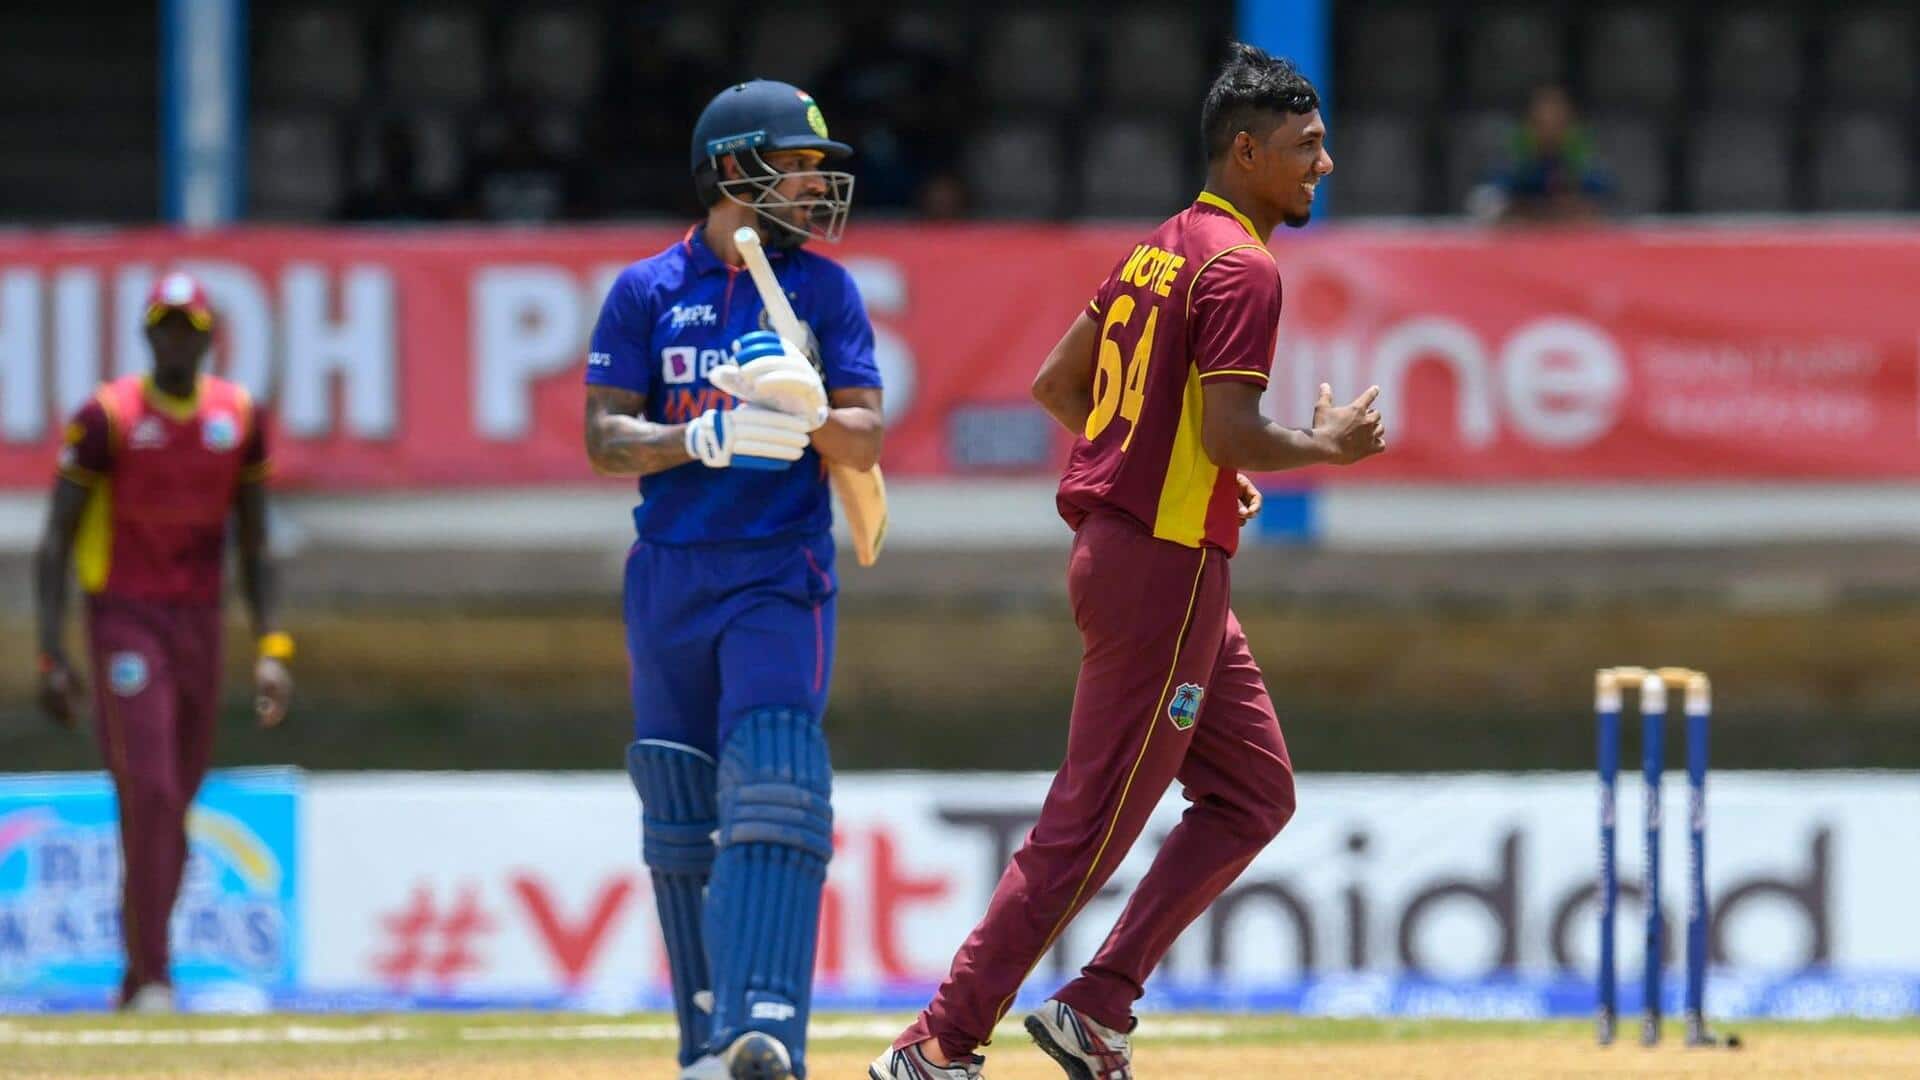 ICC प्लेयर ऑफ द मंथ: मई के लिए वेस्टइंडीज के गुडाकेश मोती ने जीता पुरस्कार